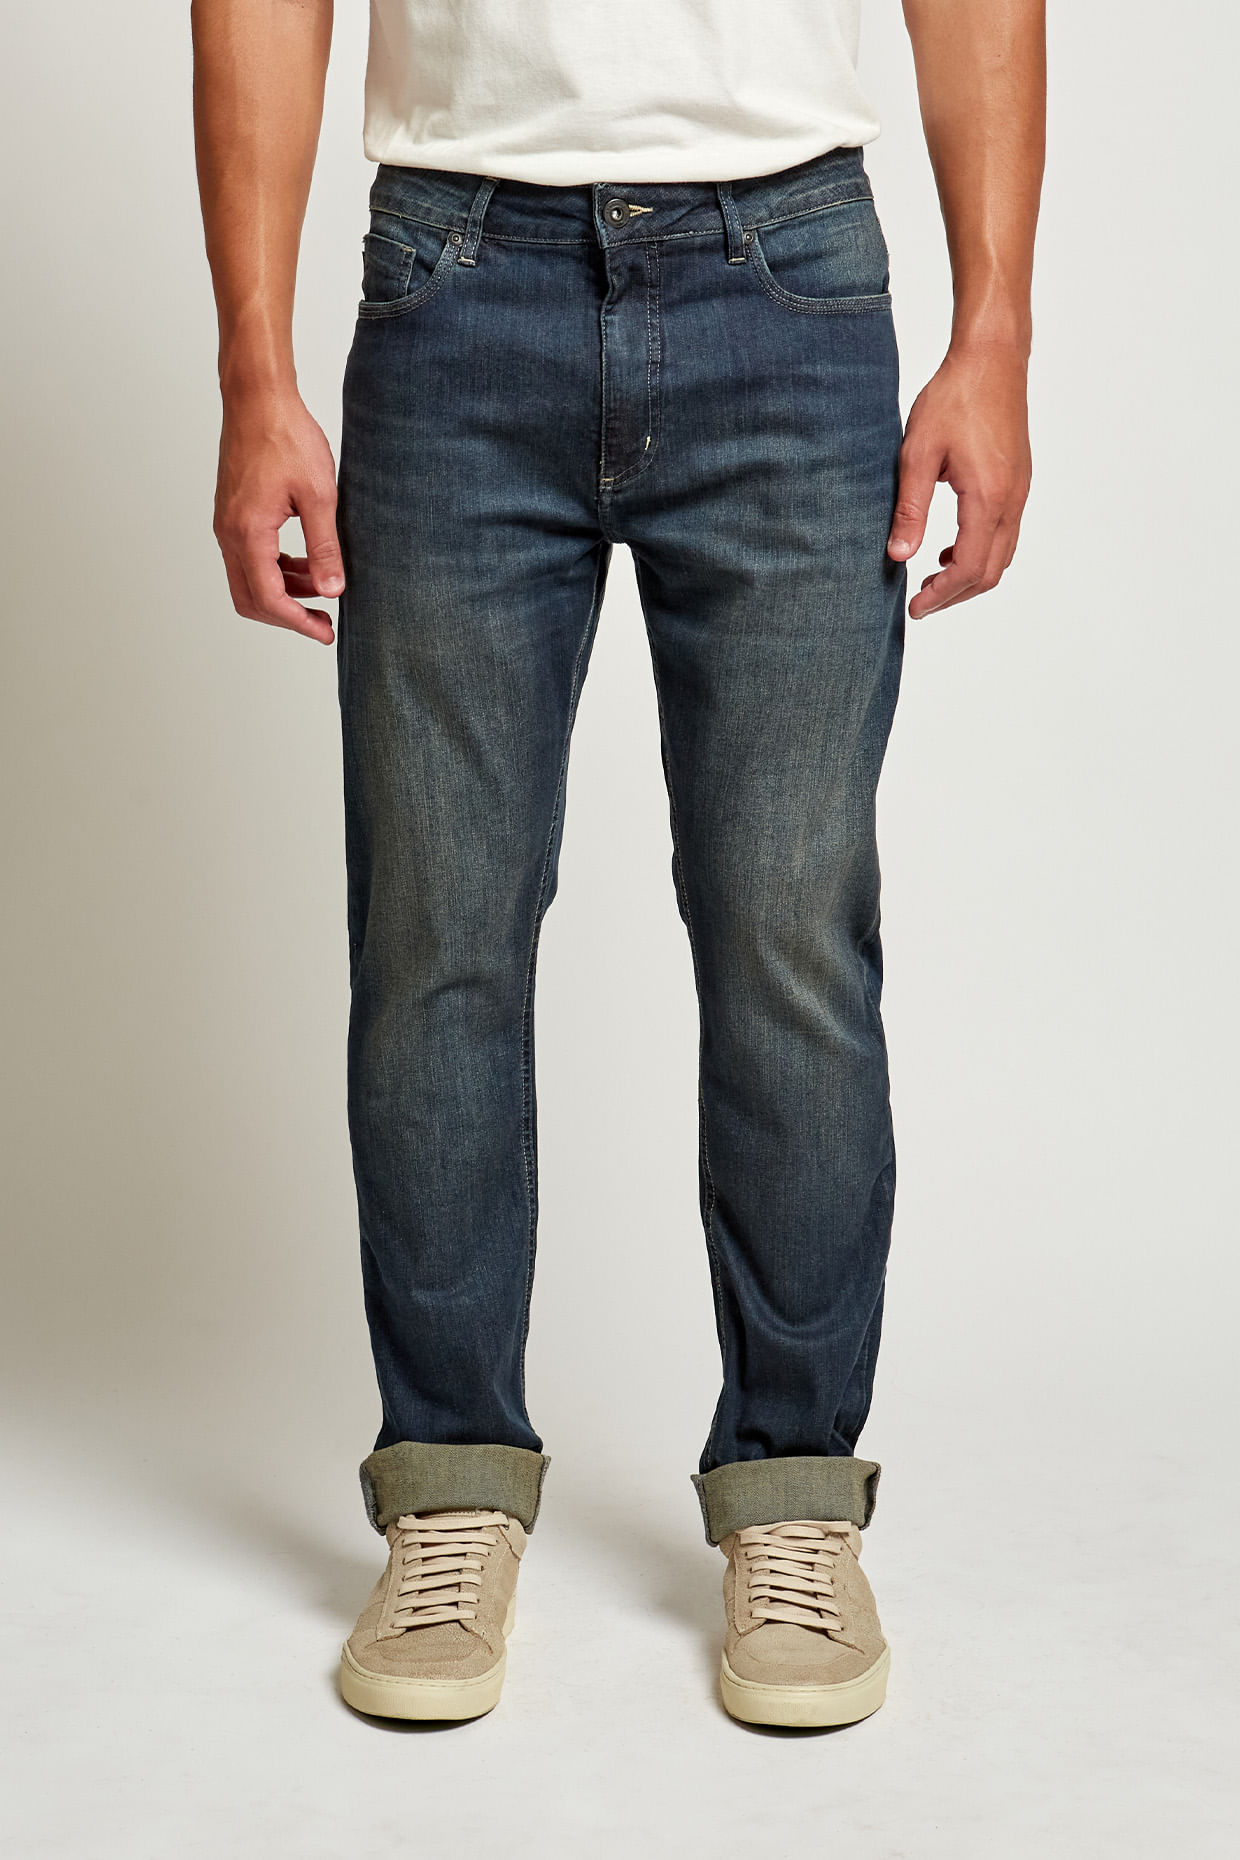 20906---Calca-Jeans-Brooklyn--1-